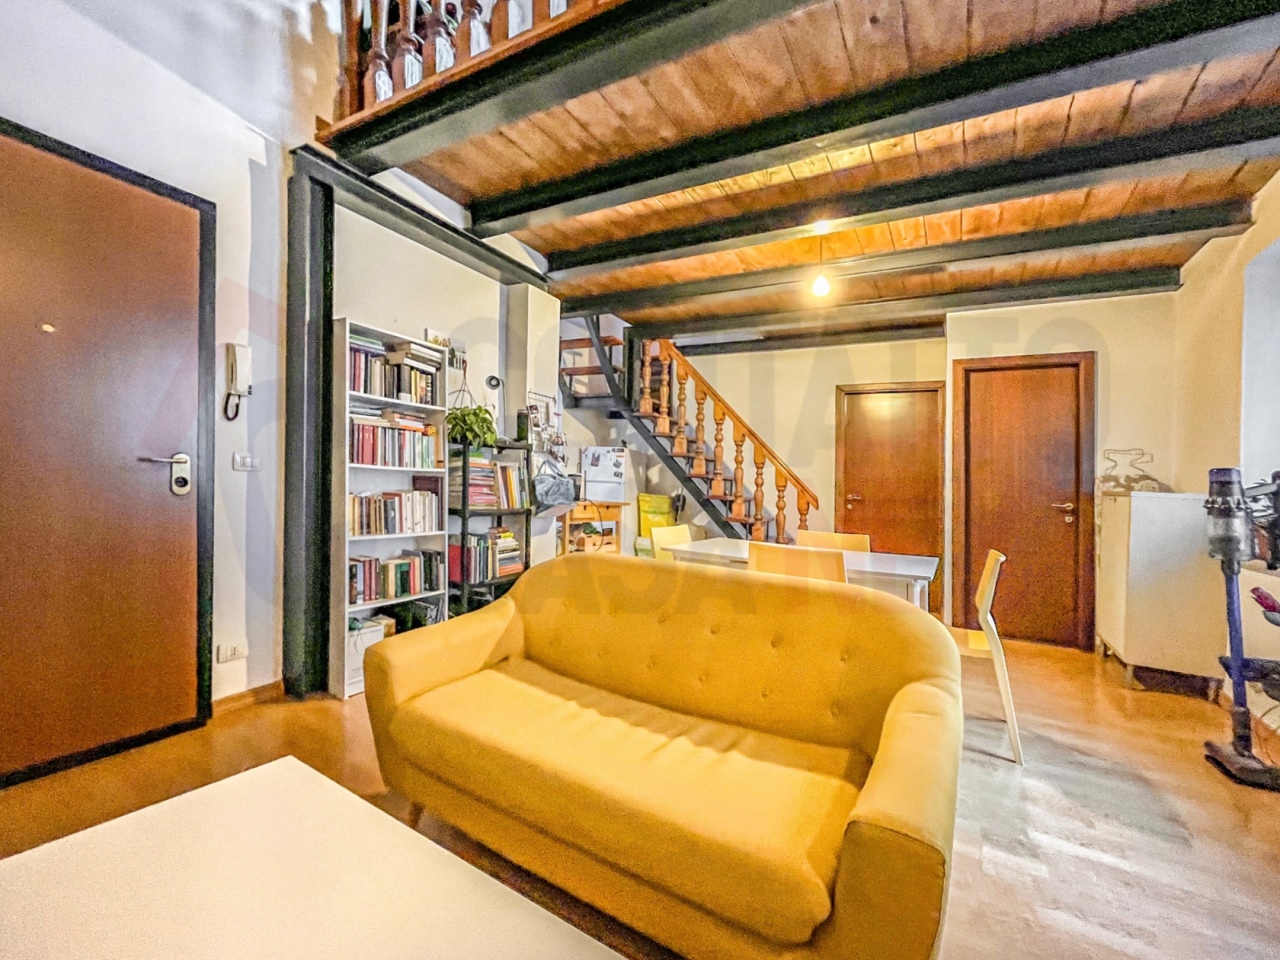 Appartamento in vendita a Jesi, 4 locali, prezzo € 85.000 | PortaleAgenzieImmobiliari.it